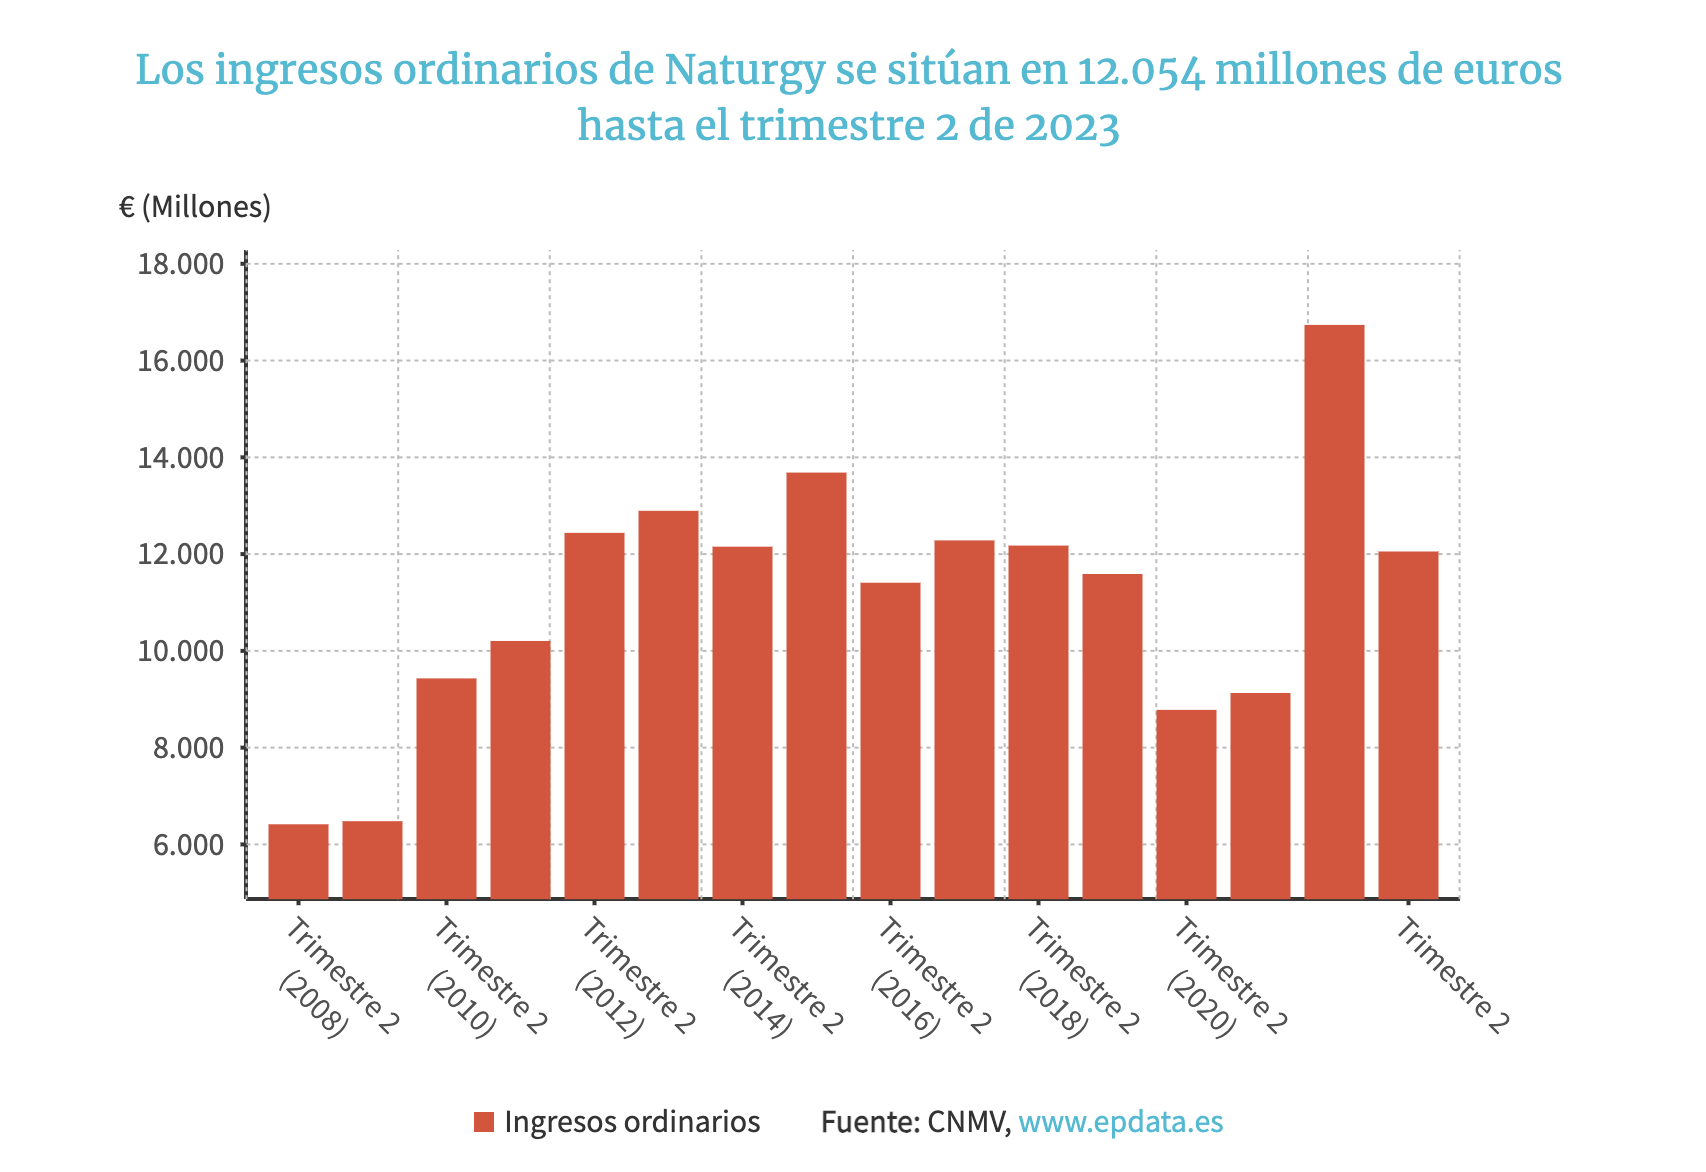 Los ingresos ordinarios de Naturgy se sitúan en 12.054 millones de euros hasta el trimestre 2 de 2023